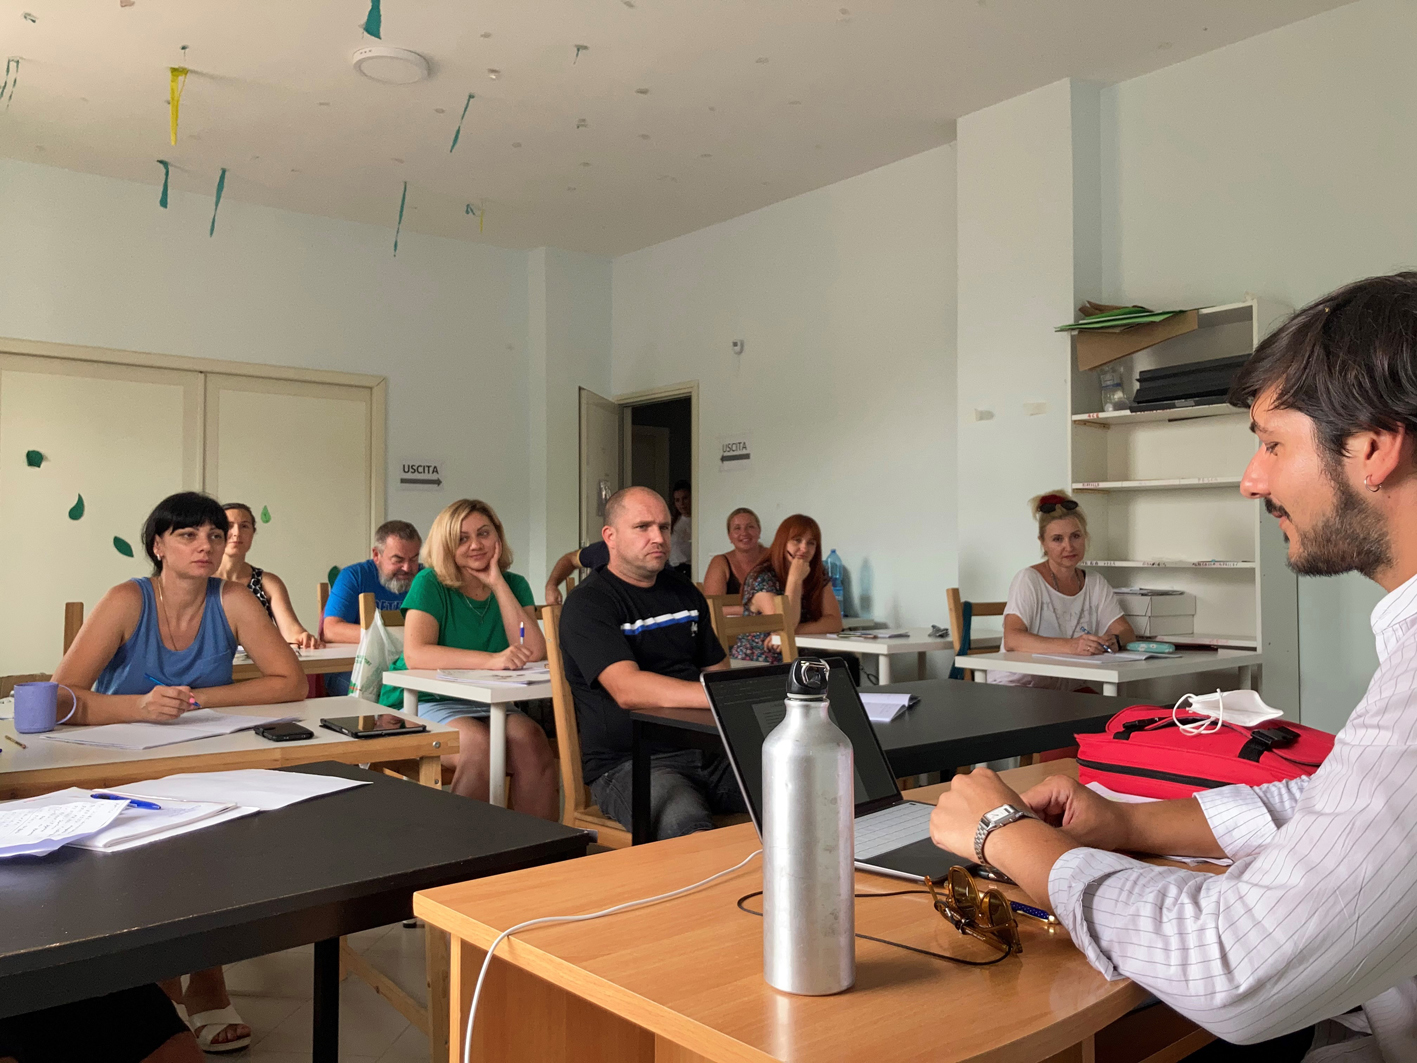 Formazione per i rifugiati ucraini: progetti di integrazione a Montoro e Avellino